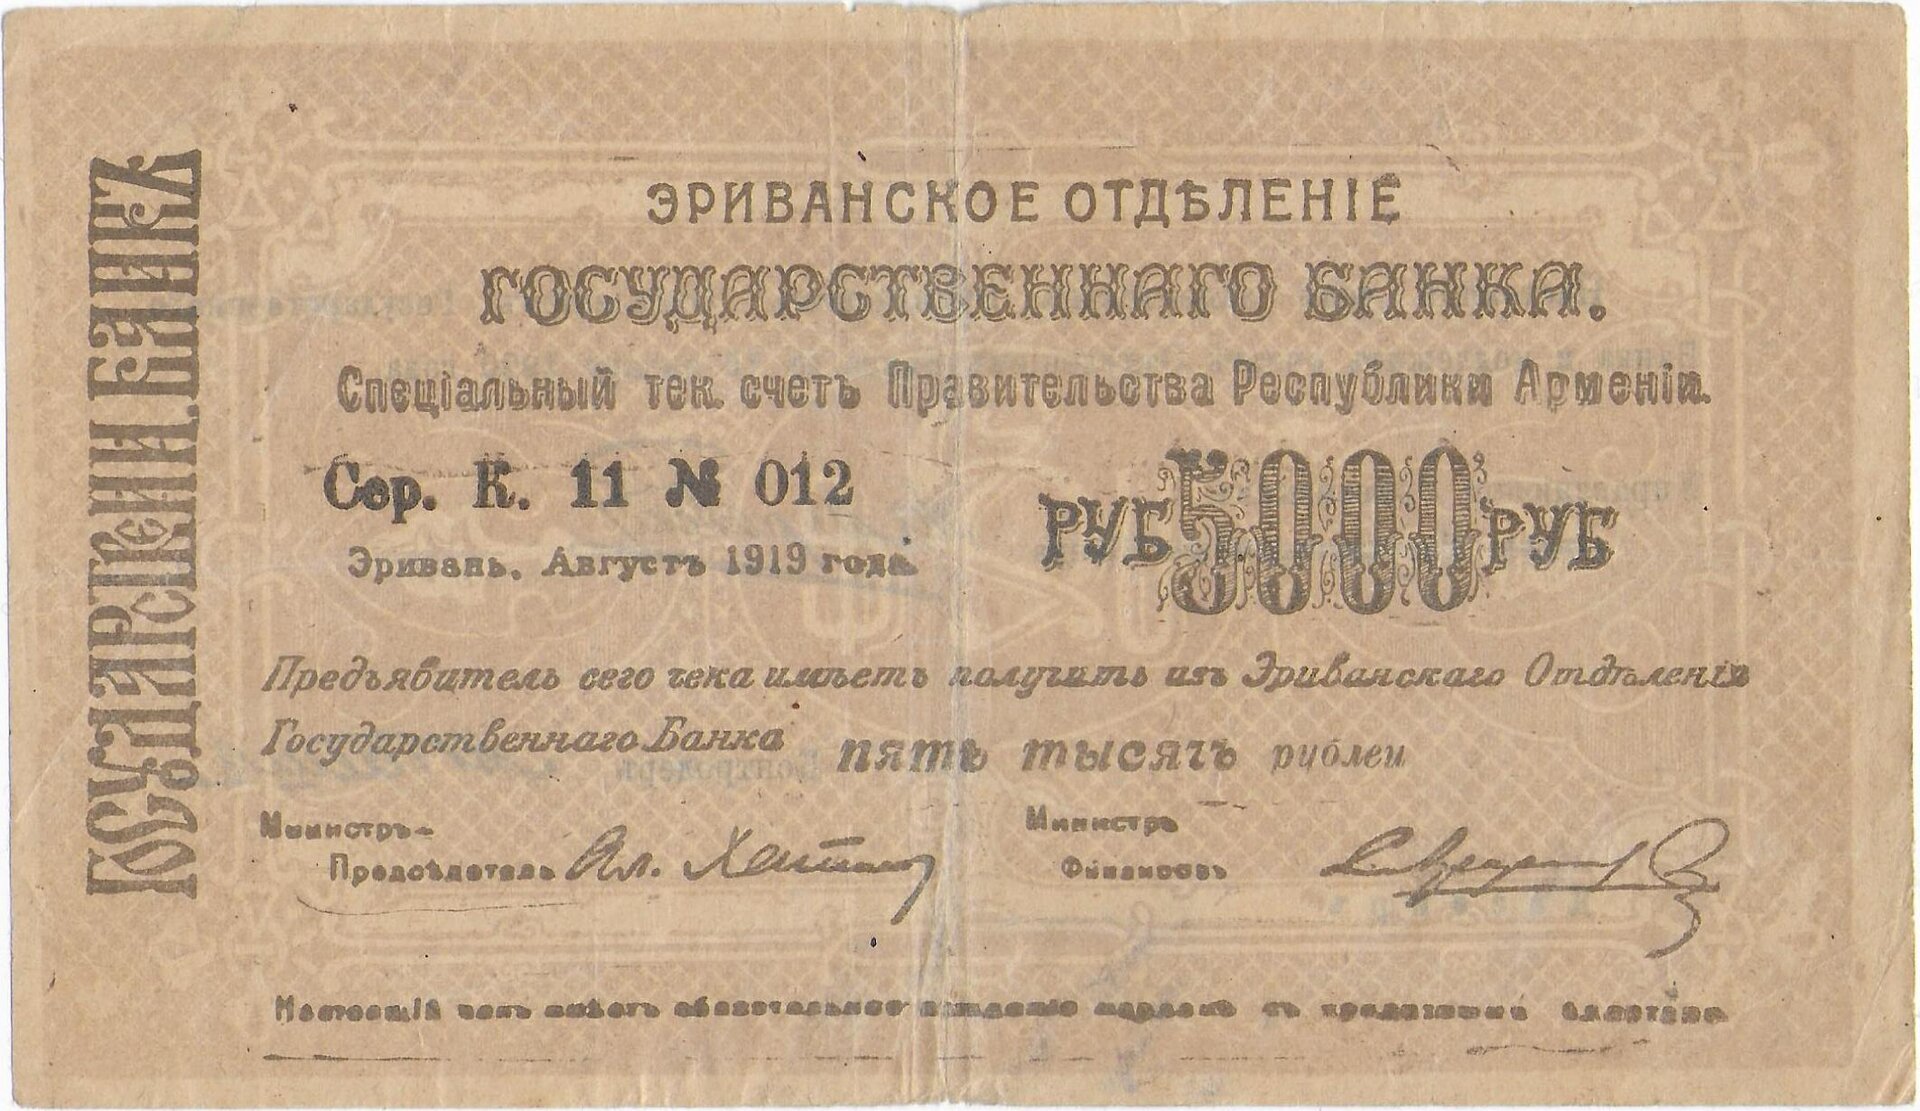 ARMENIA  Autonomous Republic   5000 Rubles 1919 (1920)   P.28  front.jpg